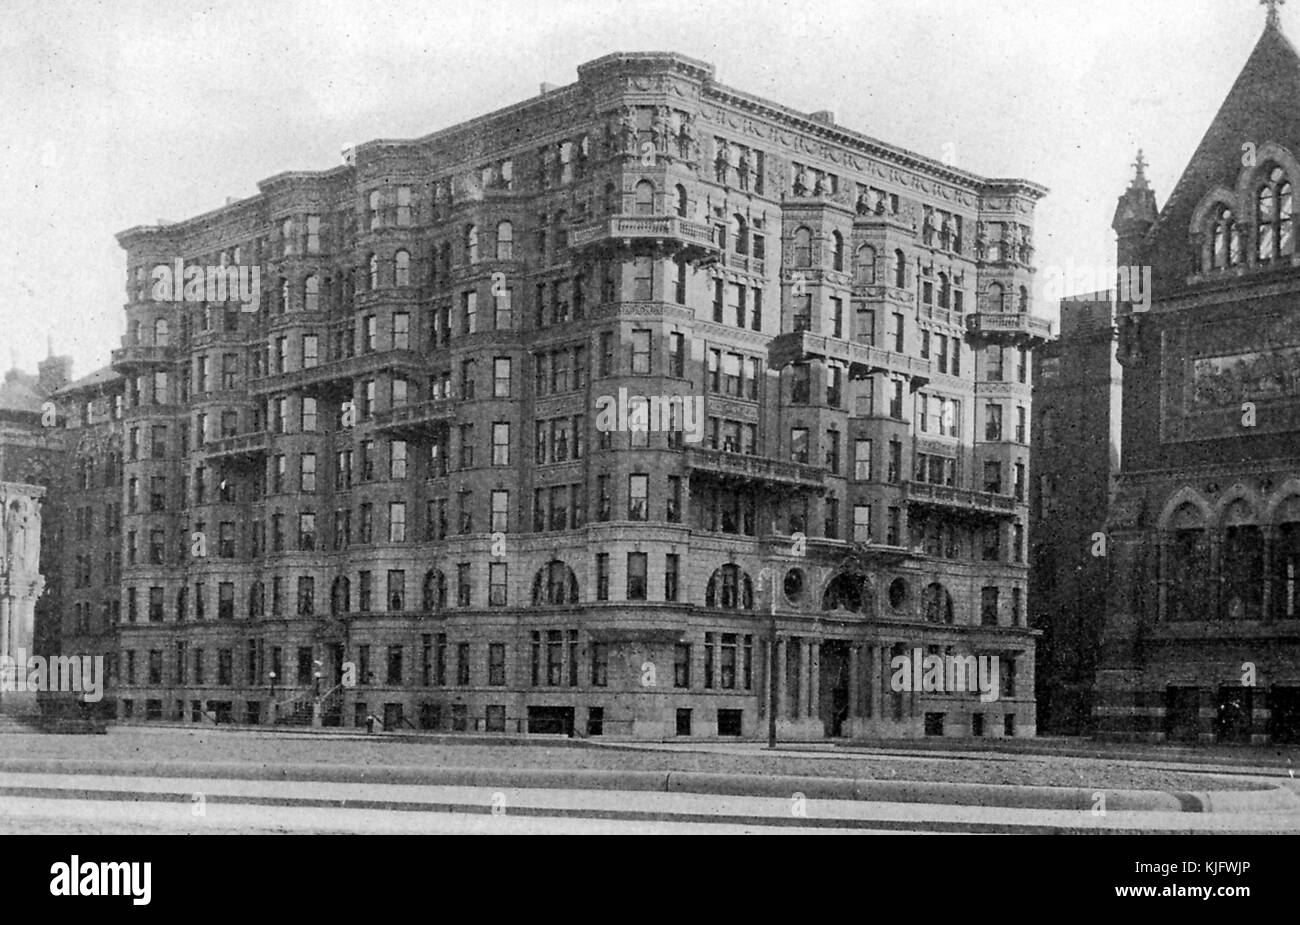 Photo de l'hôtel Westminster, Westminster par le développeur chambers, dans Copley Square, qui a été la source de beaucoup de controverses concernant la hauteur du bâtiment, lois, Boston, Massachussets, Boston, Massachusetts, 1913. Banque D'Images